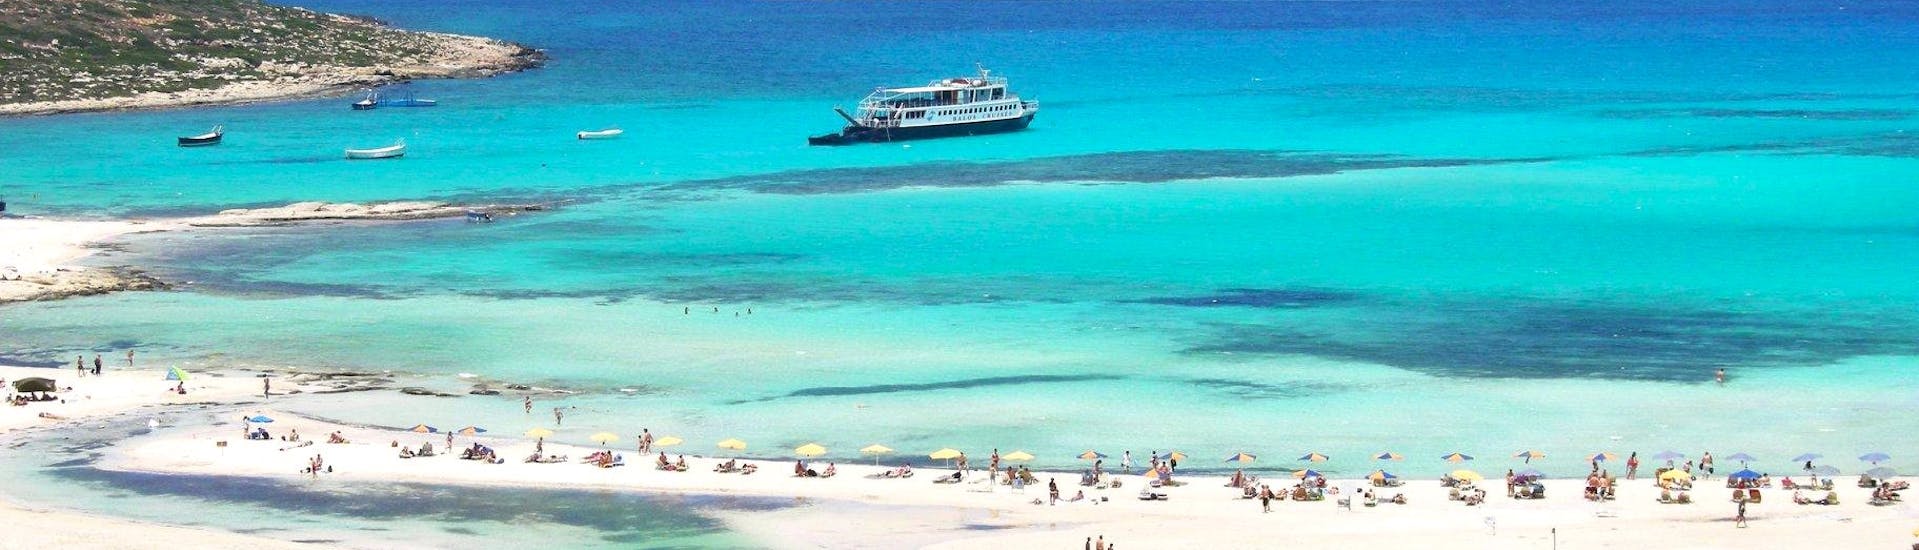 Die wunderschöne Lagune von Balos während eines Bootstour nach Balos & Gramvousa von Kissamos mit Cretan Daily Cruises.